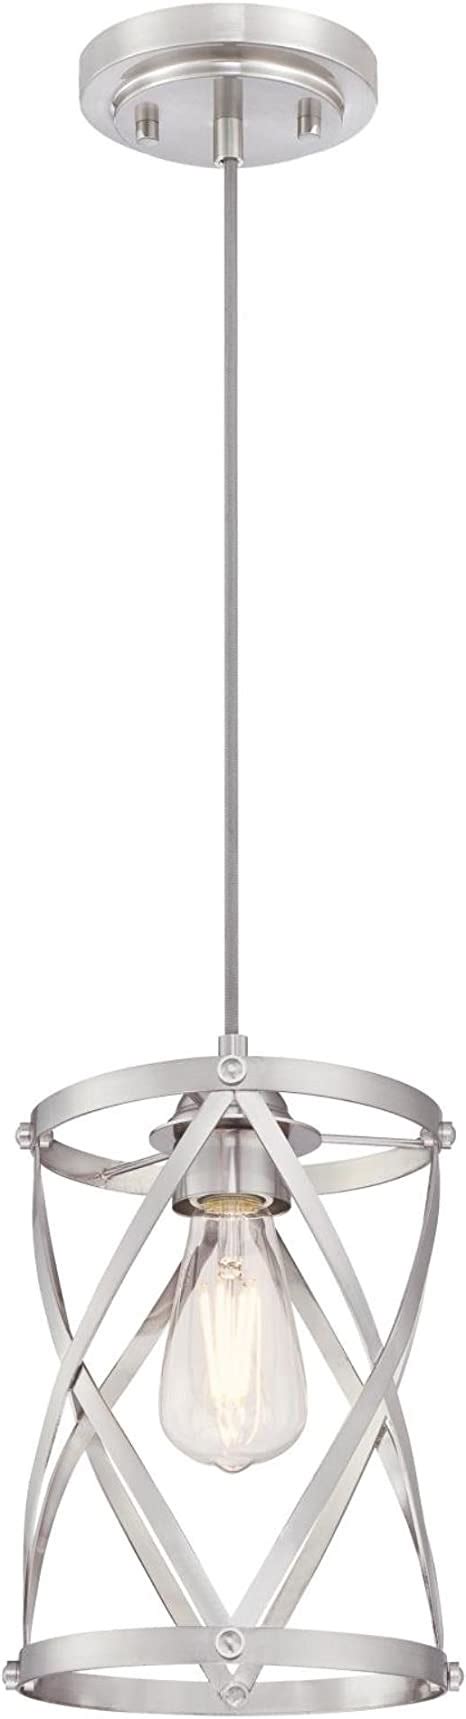 Westinghouse Lighting 6362300 Isadora One-Light Mini, Brushed Nickel Finish Indoor Pendant,